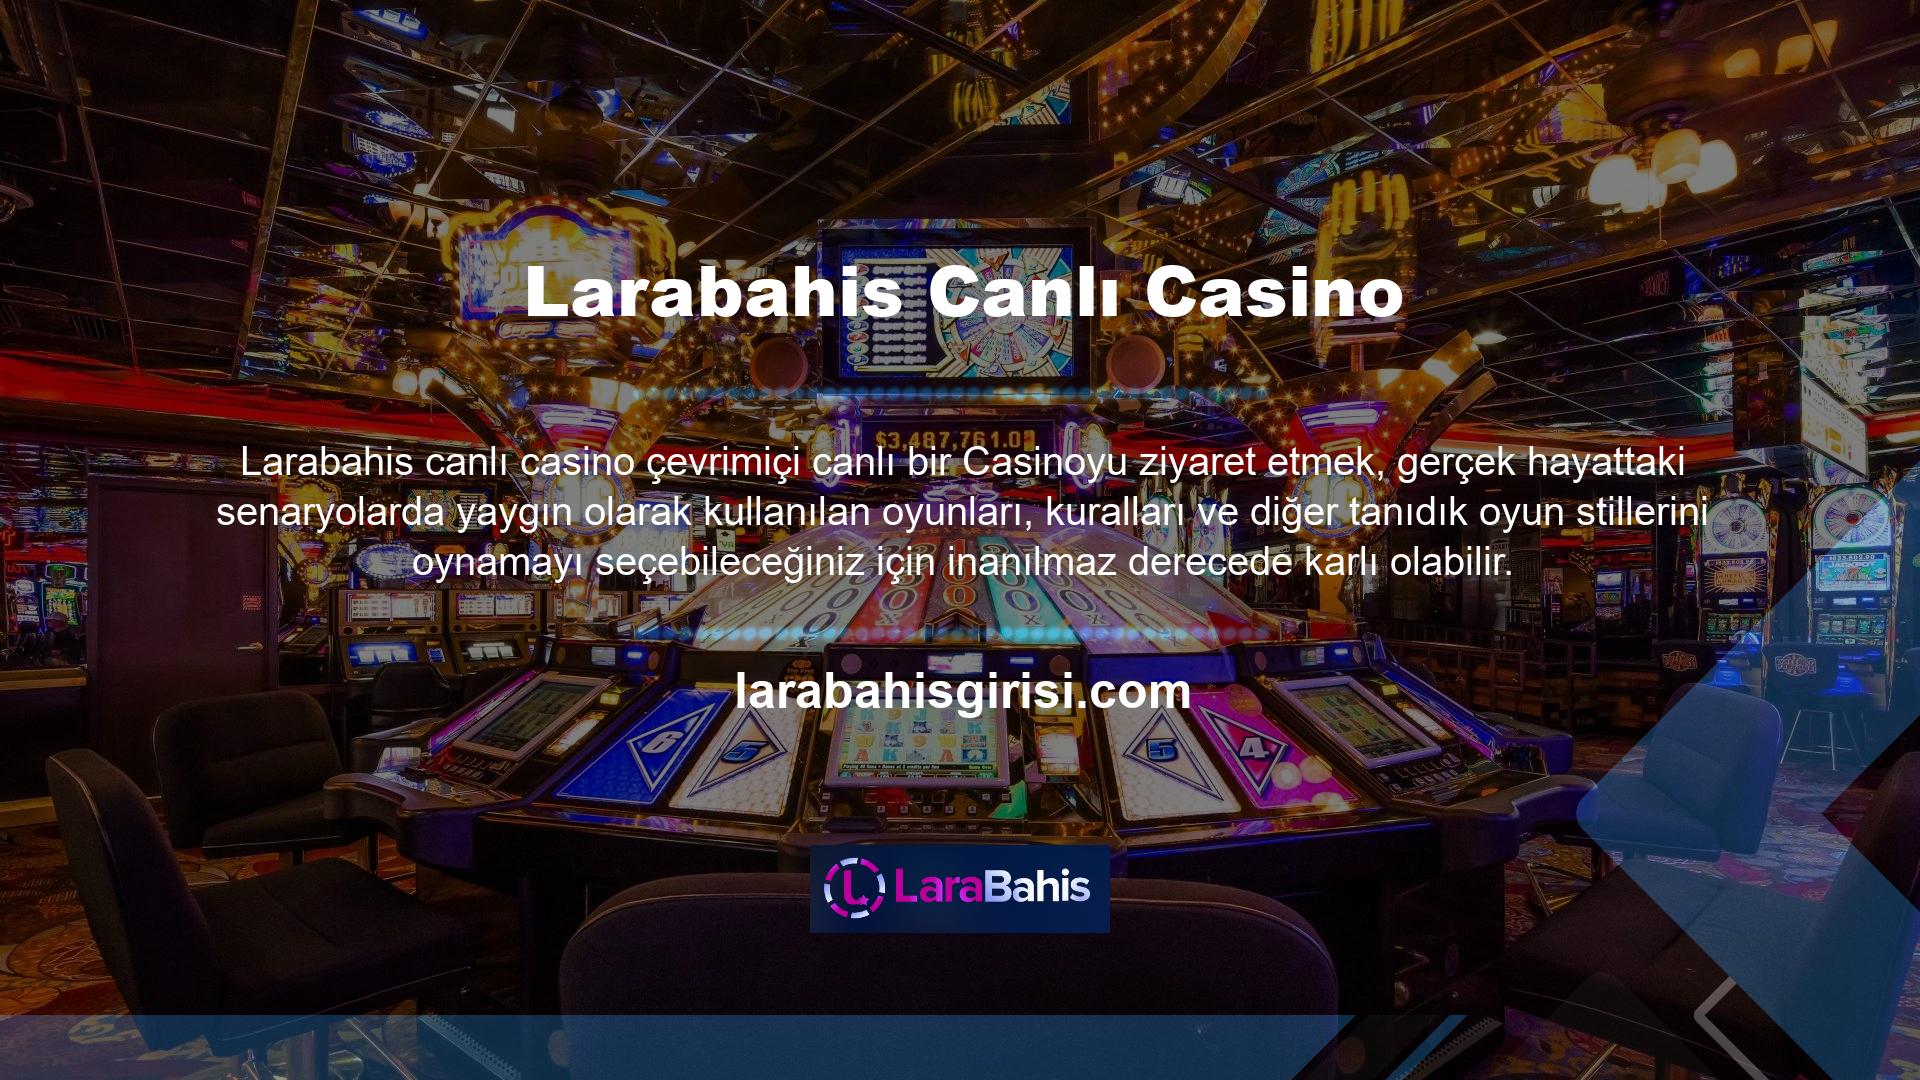 Bireylerin çevrimiçi platformlar aracılığıyla para kazanmadan önce Casino sitelerini tanımaları gerekir